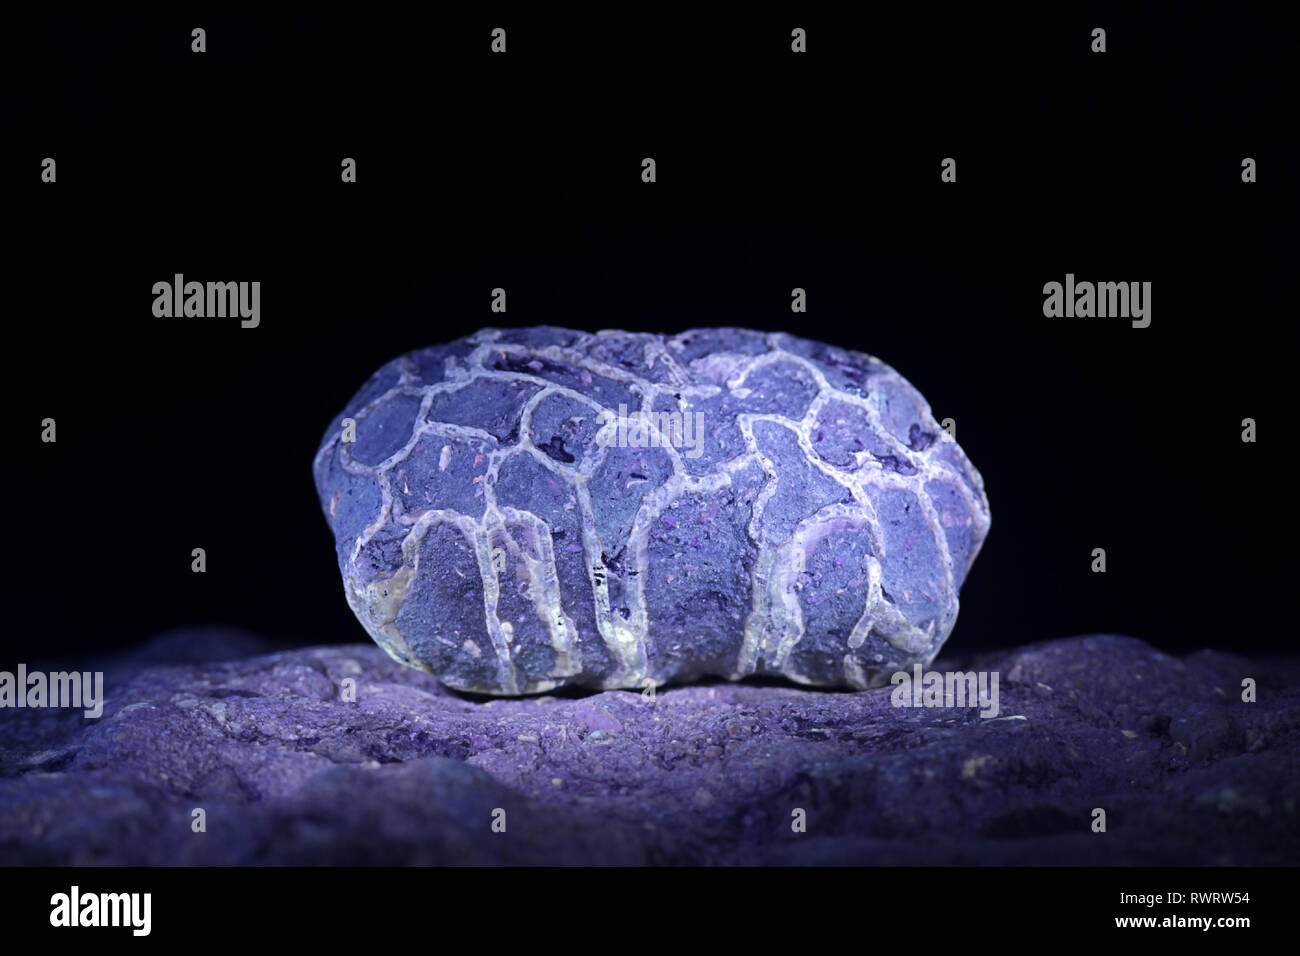 Les récifs siluriens fossile de Saarenmaa en Estonie photographié à la lumière ultraviolette (365 nm) Banque D'Images